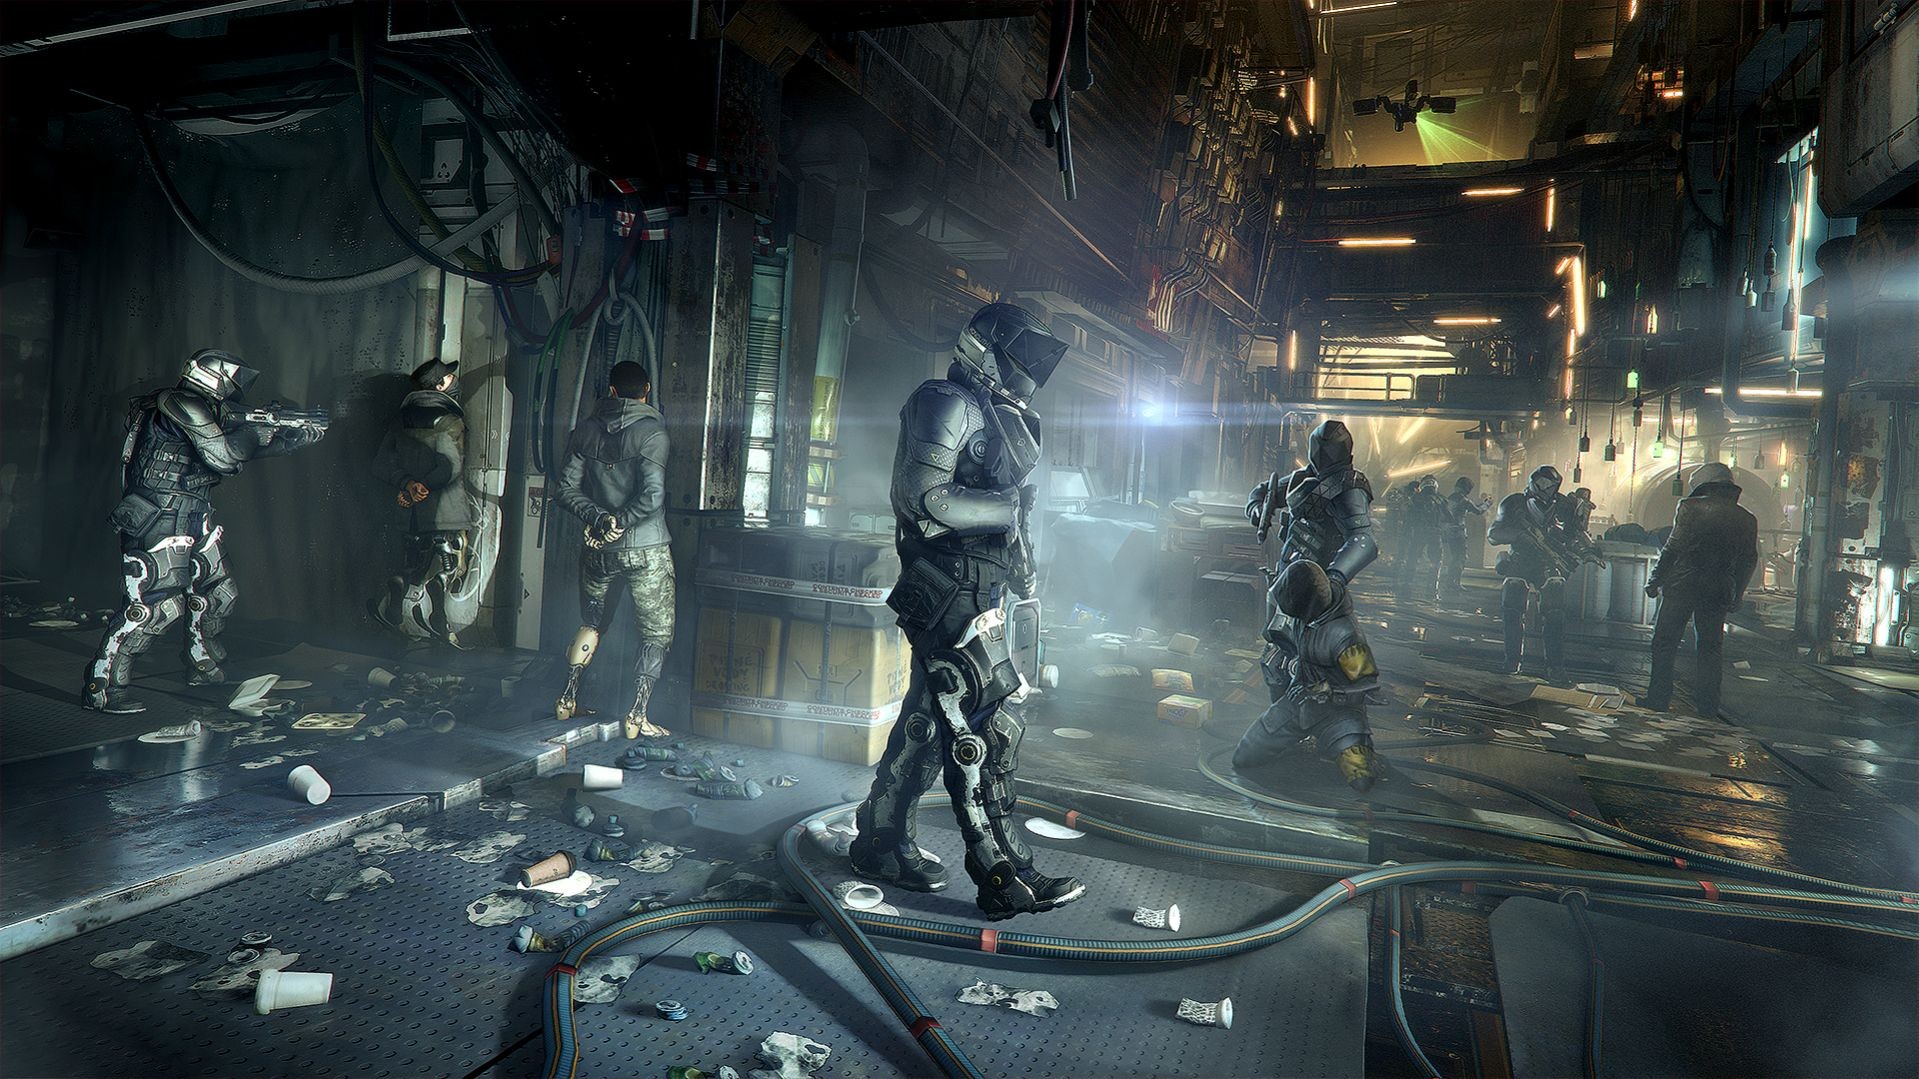 General 1919x1079 video games Deus Ex: Mankind Divided Deus Ex PC gaming futuristic